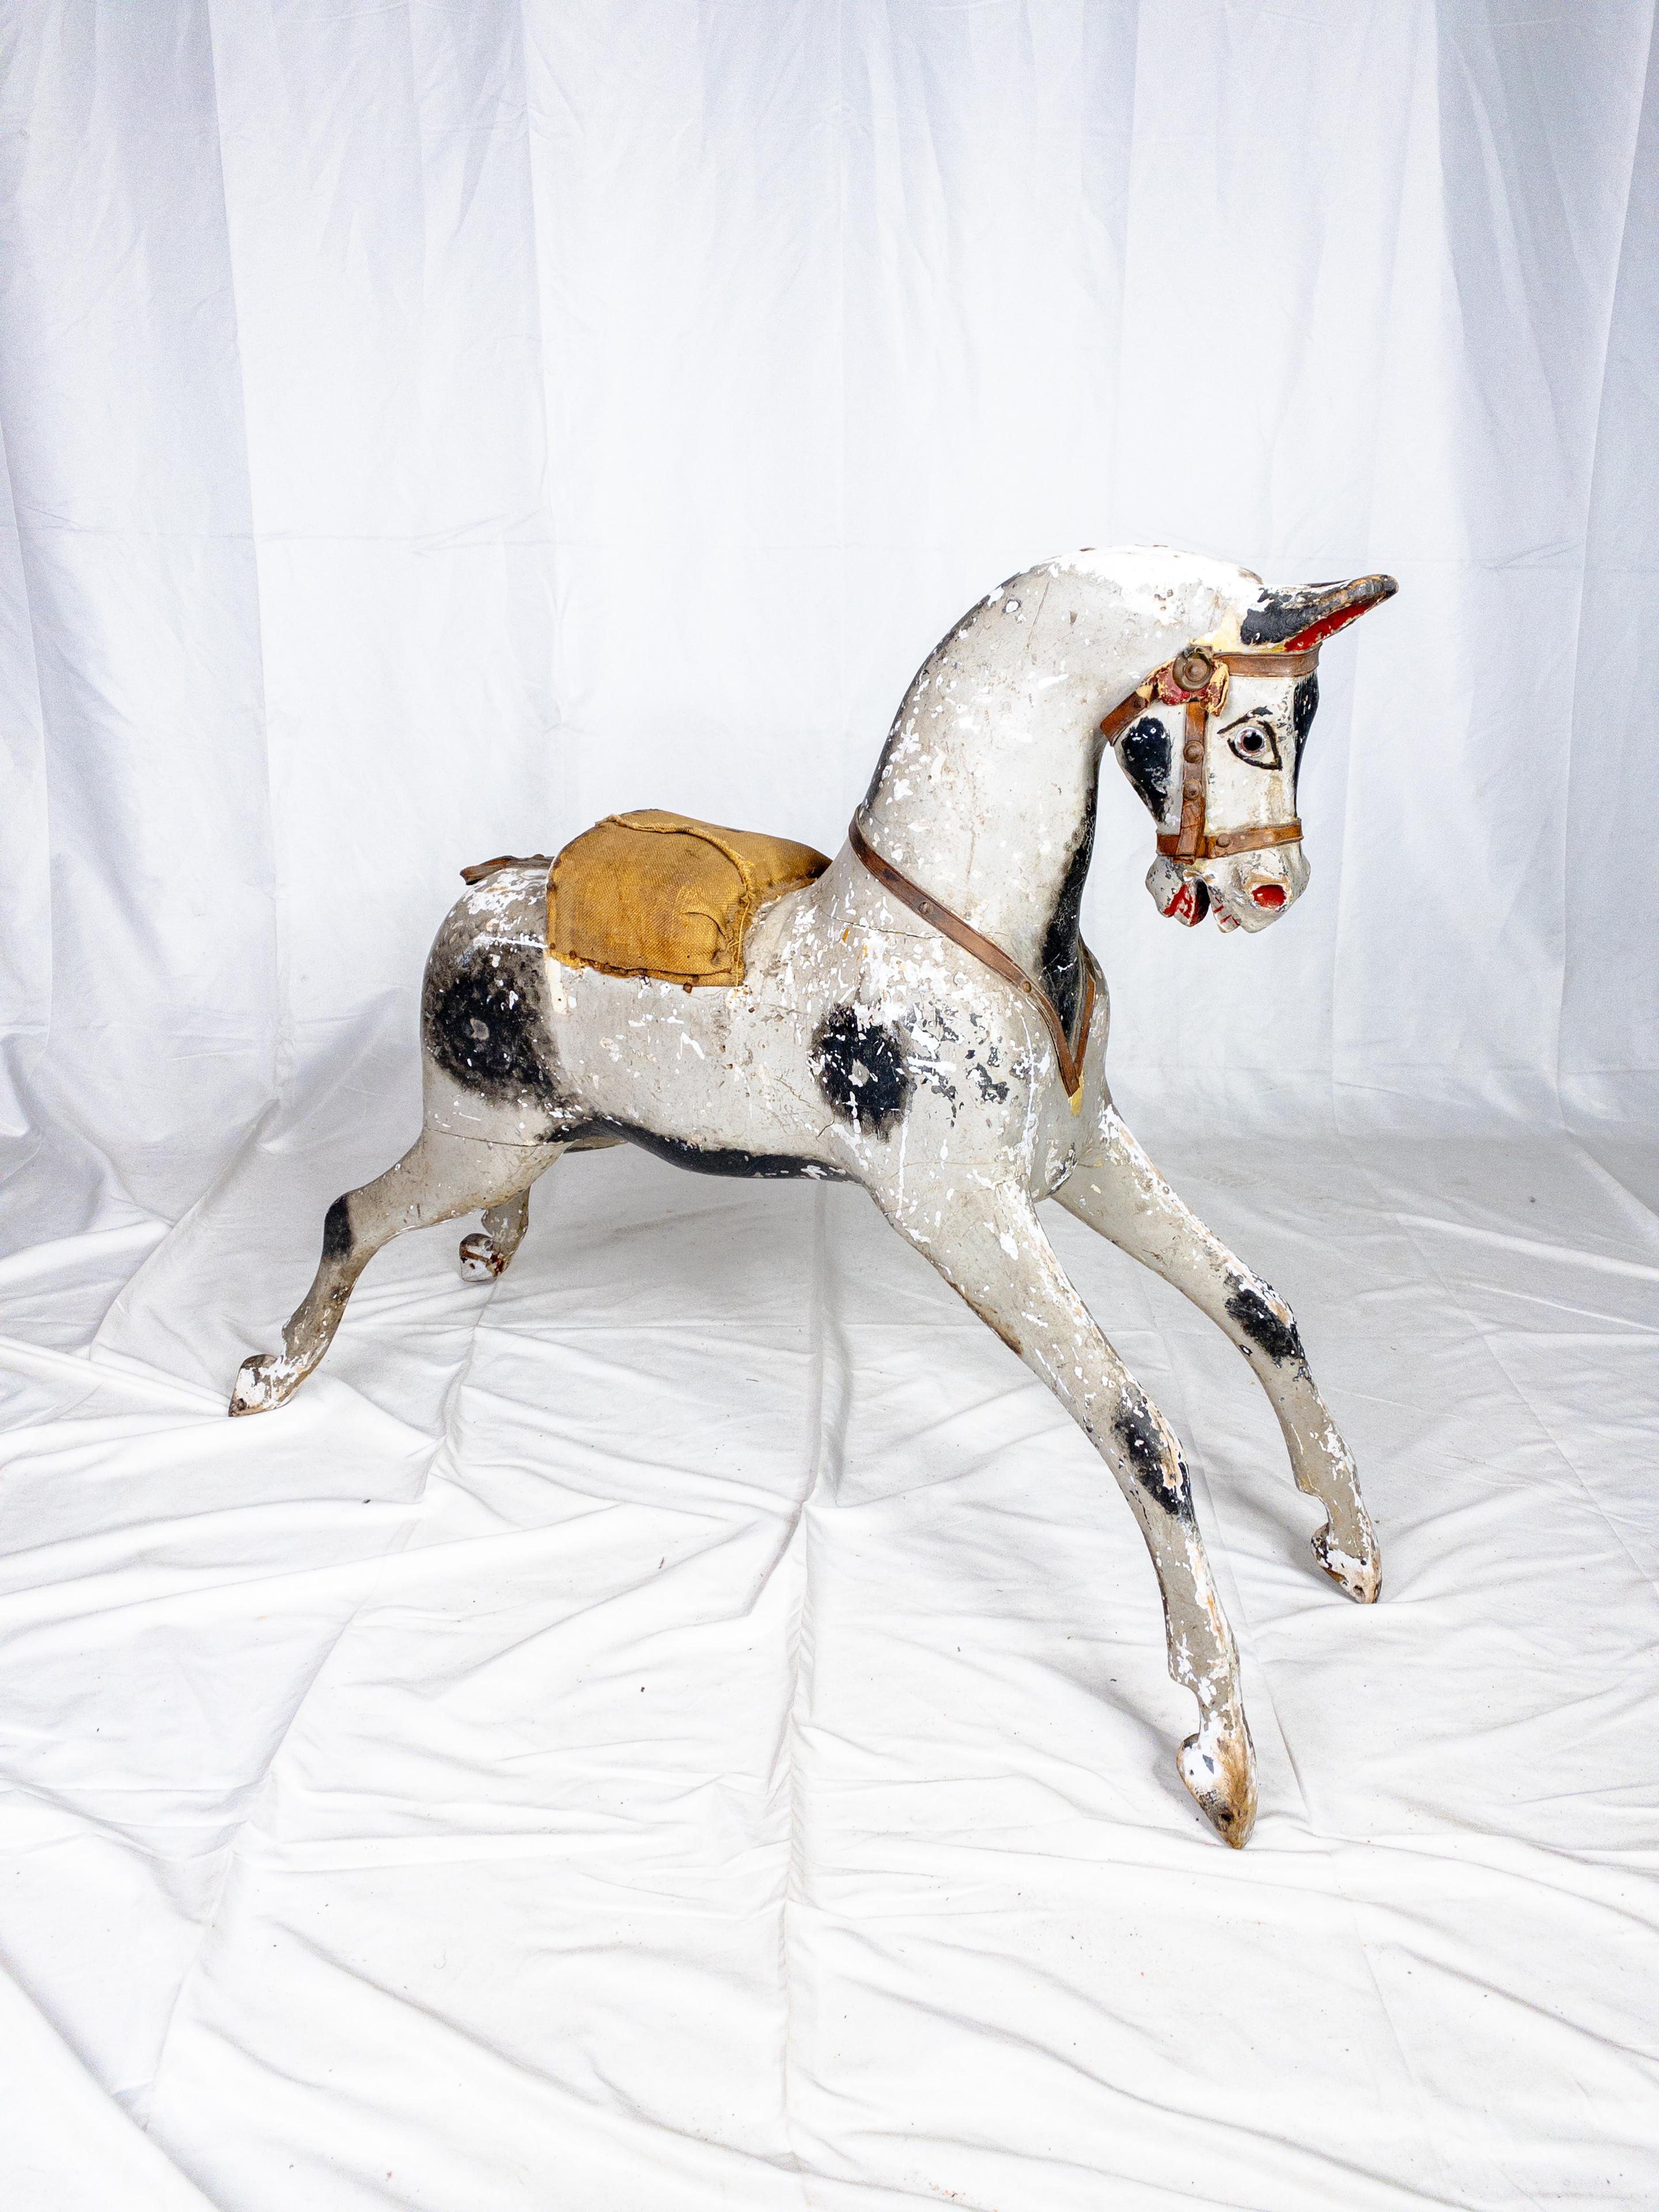 Das Original Paint Rocking Horse aus dem 19. Jahrhundert mit seiner fehlenden Wippe ist ein nostalgisches Relikt, das Geschichten über vergangene Epochen und kindliche Launen erzählt. Trotz ihres Alters hat die charmante Pferdefigur noch Reste ihrer